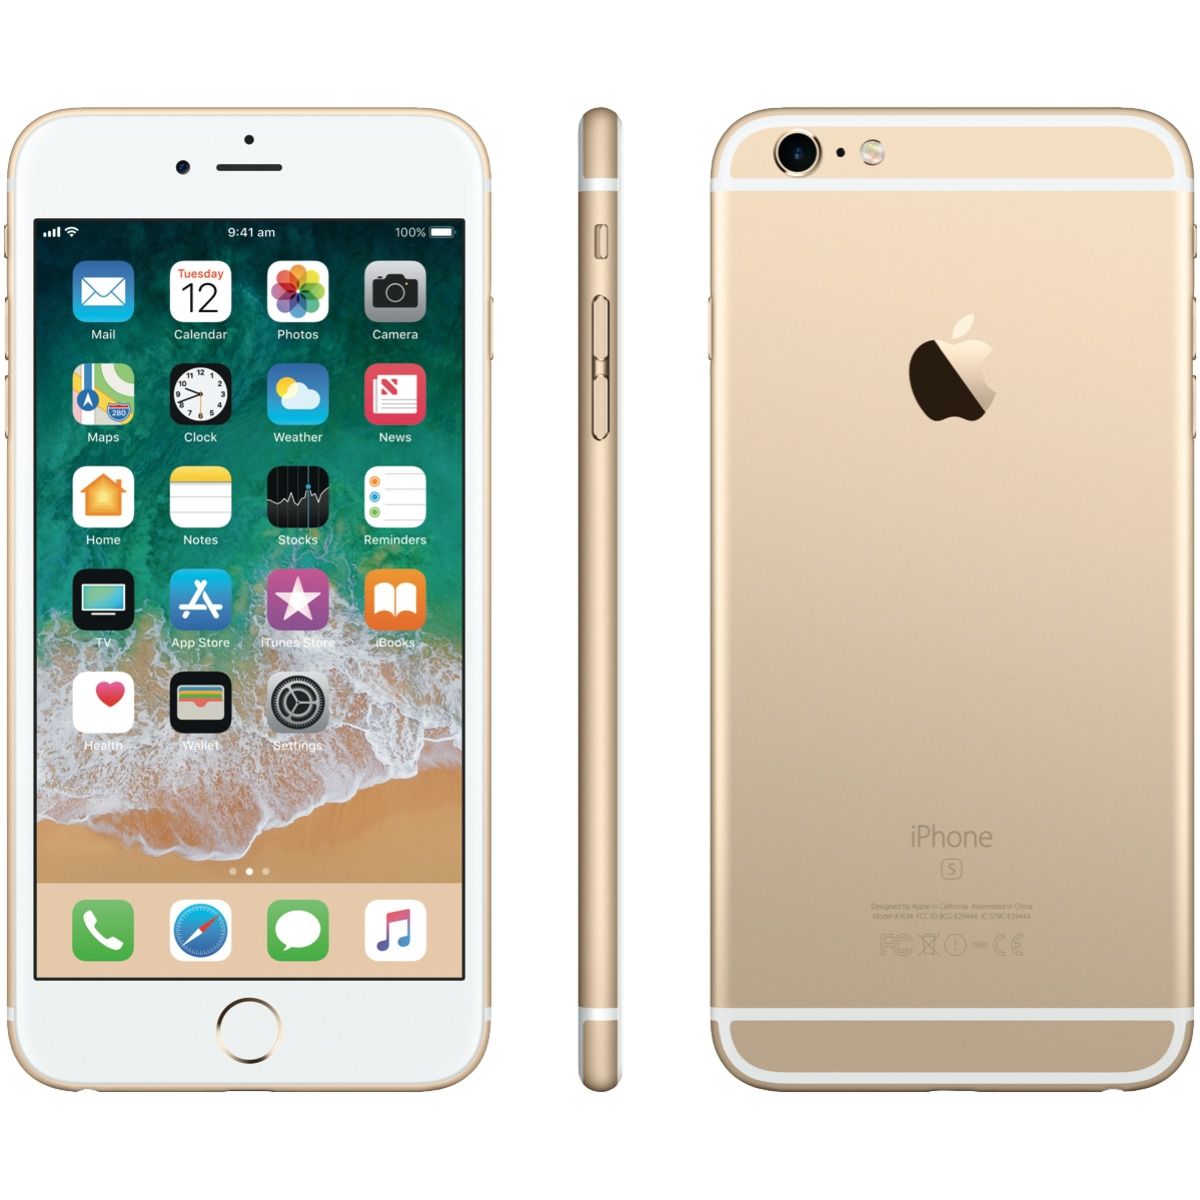 iPhone 6s Plus Gold 64 GB Y!mobile - スマートフォン本体